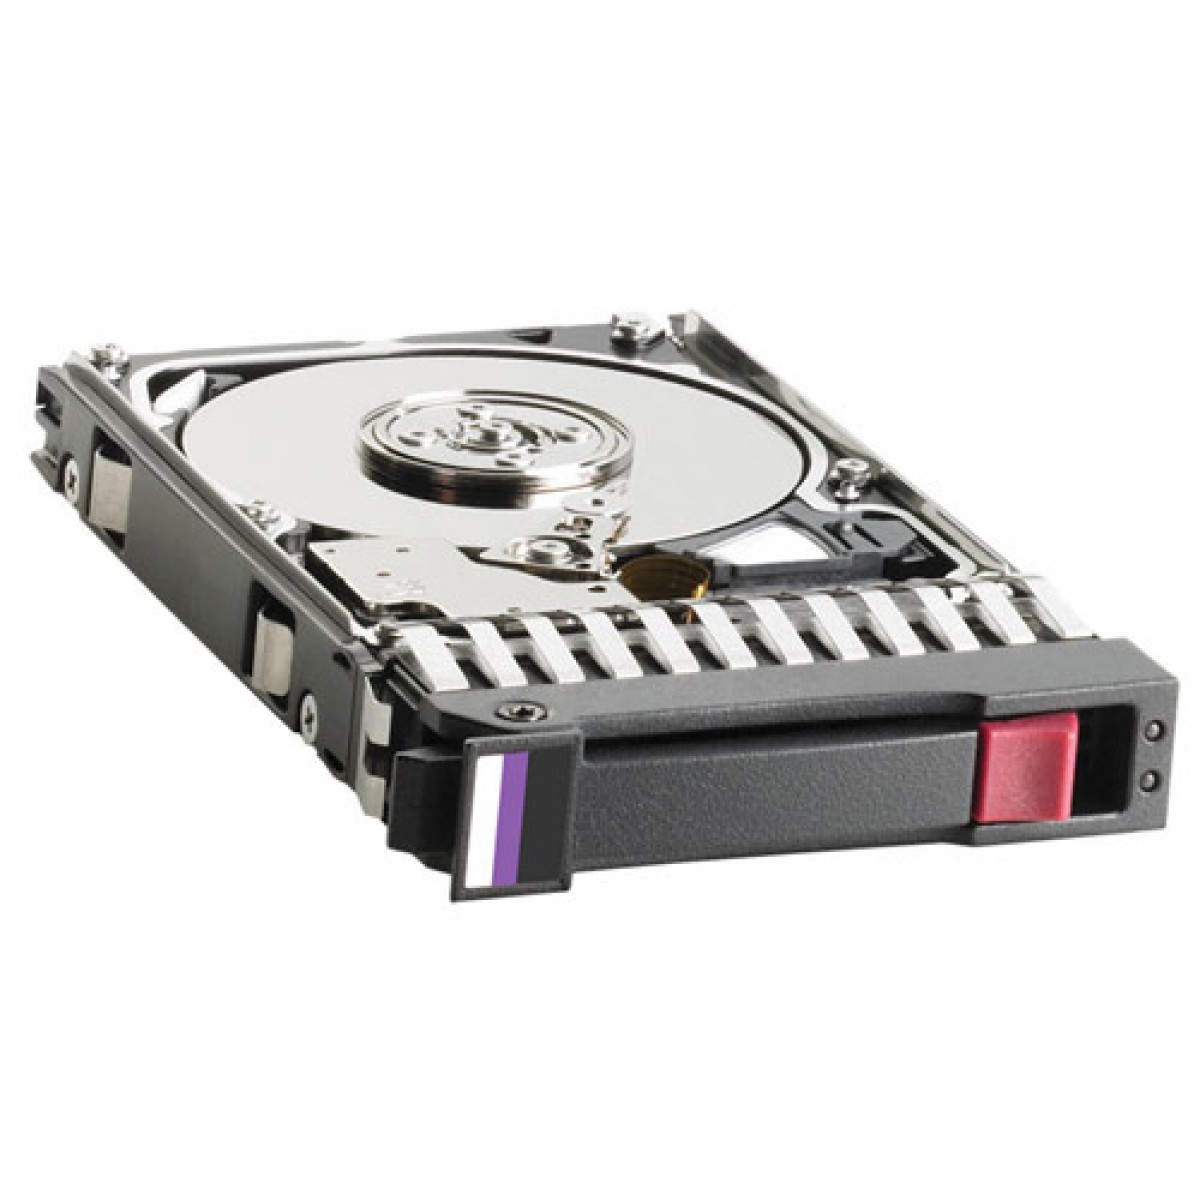 CPFP0 | Dell 500GB 7200RPM SATA 3GB/s 16MB Cache 3.5-inch Hard Drive for Dimension, Optiplex, XPS Servers